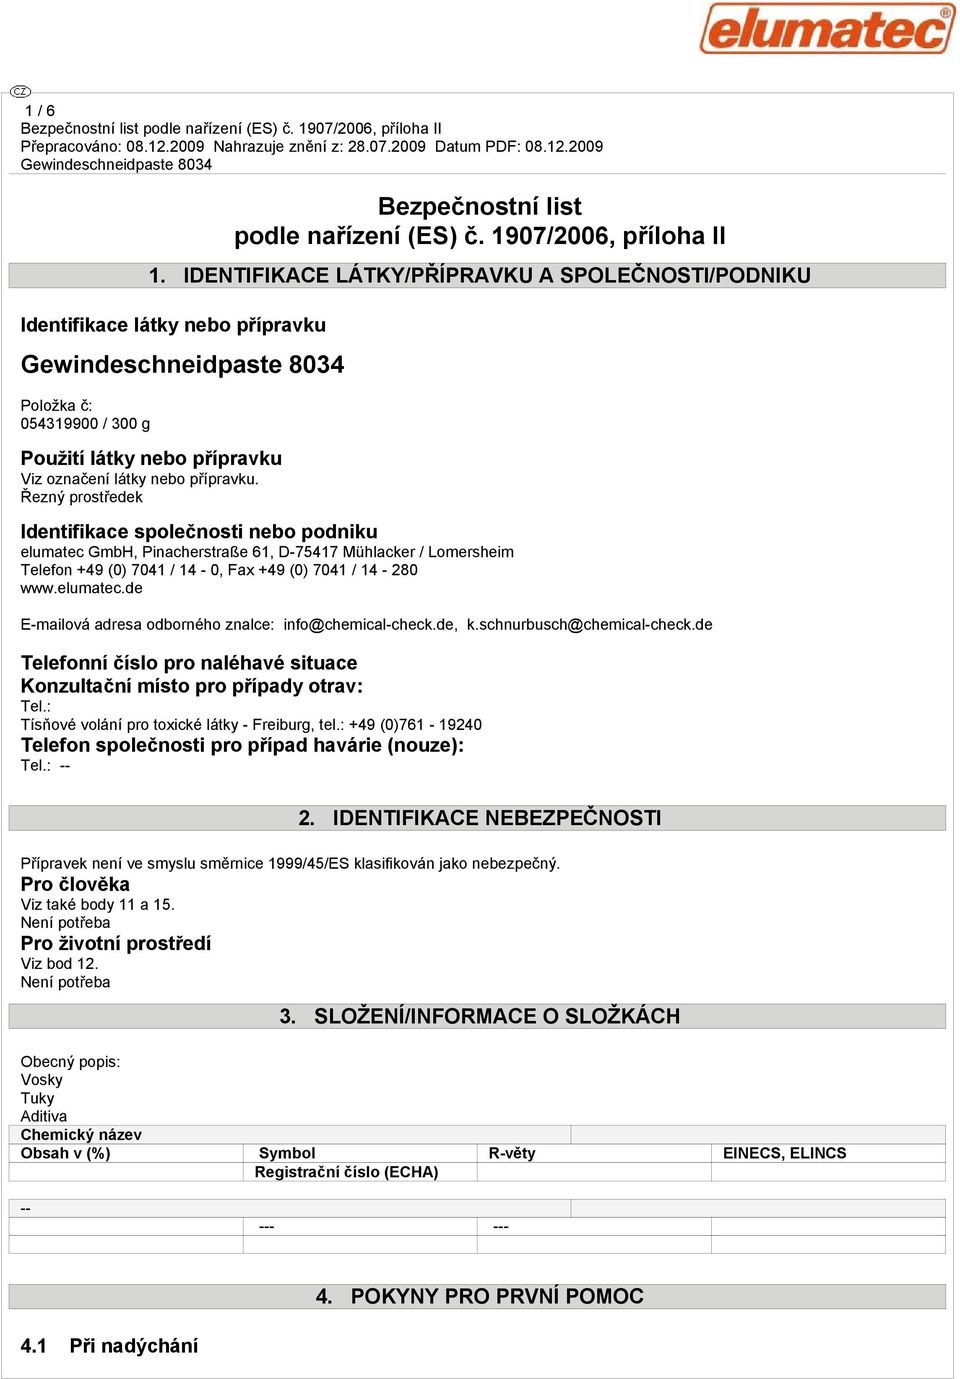 Řezný prostředek Identifikace společnosti nebo podniku elumatec GmbH, Pinacherstraße 61, D-75417 Mühlacker / Lomersheim Telefon +49 (0) 7041 / 14-0, Fax +49 (0) 7041 / 14-280 www.elumatec.de E-mailová adresa odborného znalce: info@chemical-check.